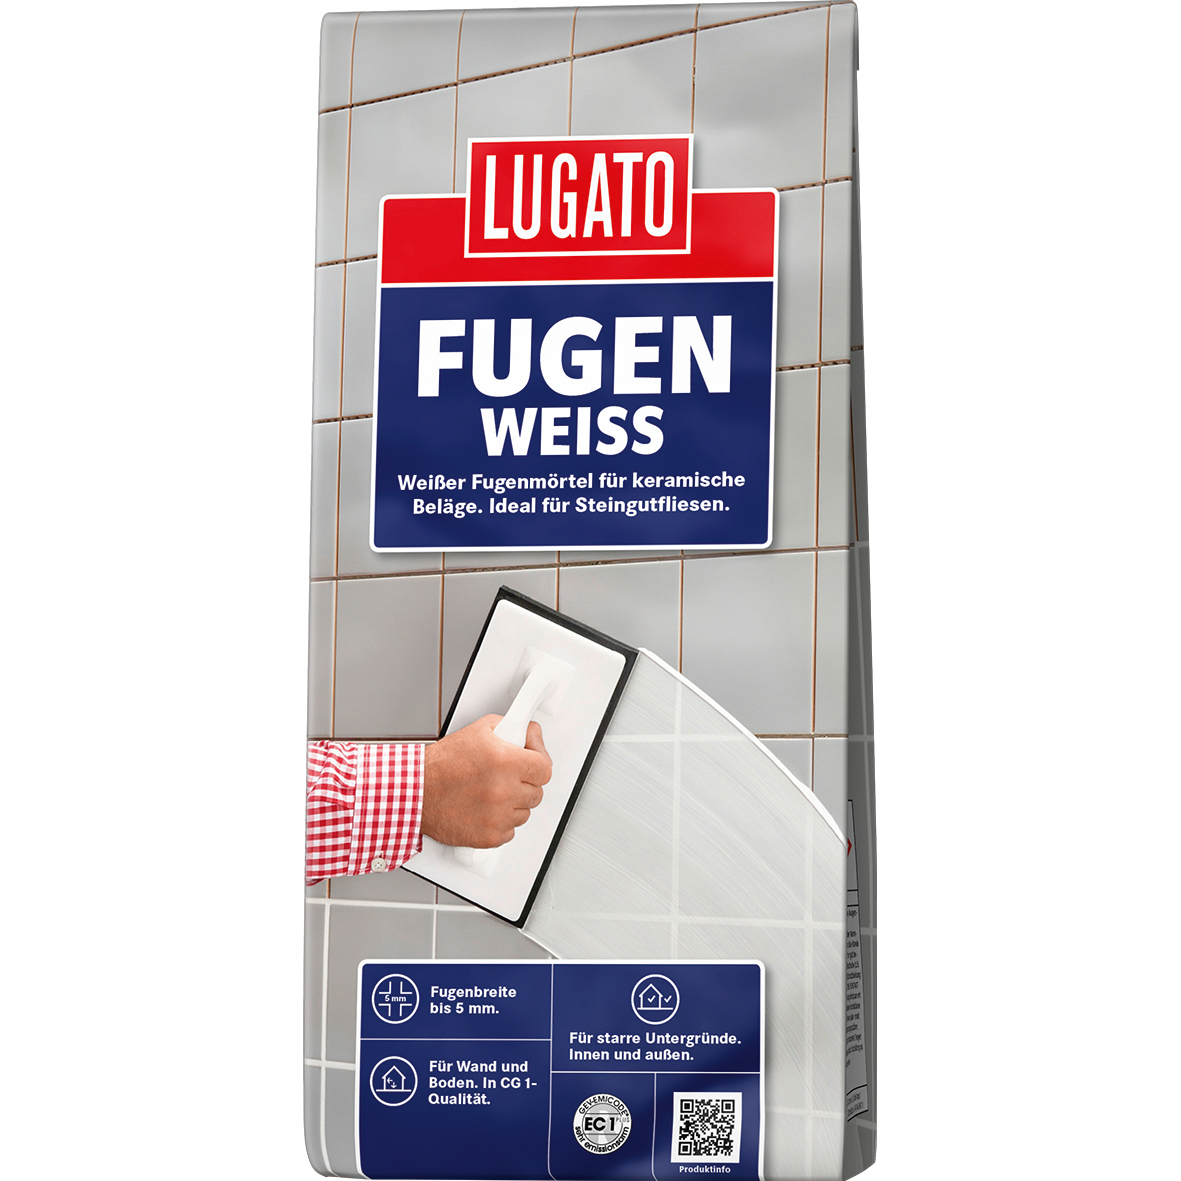 Lugato Fugenweiss 5 kg